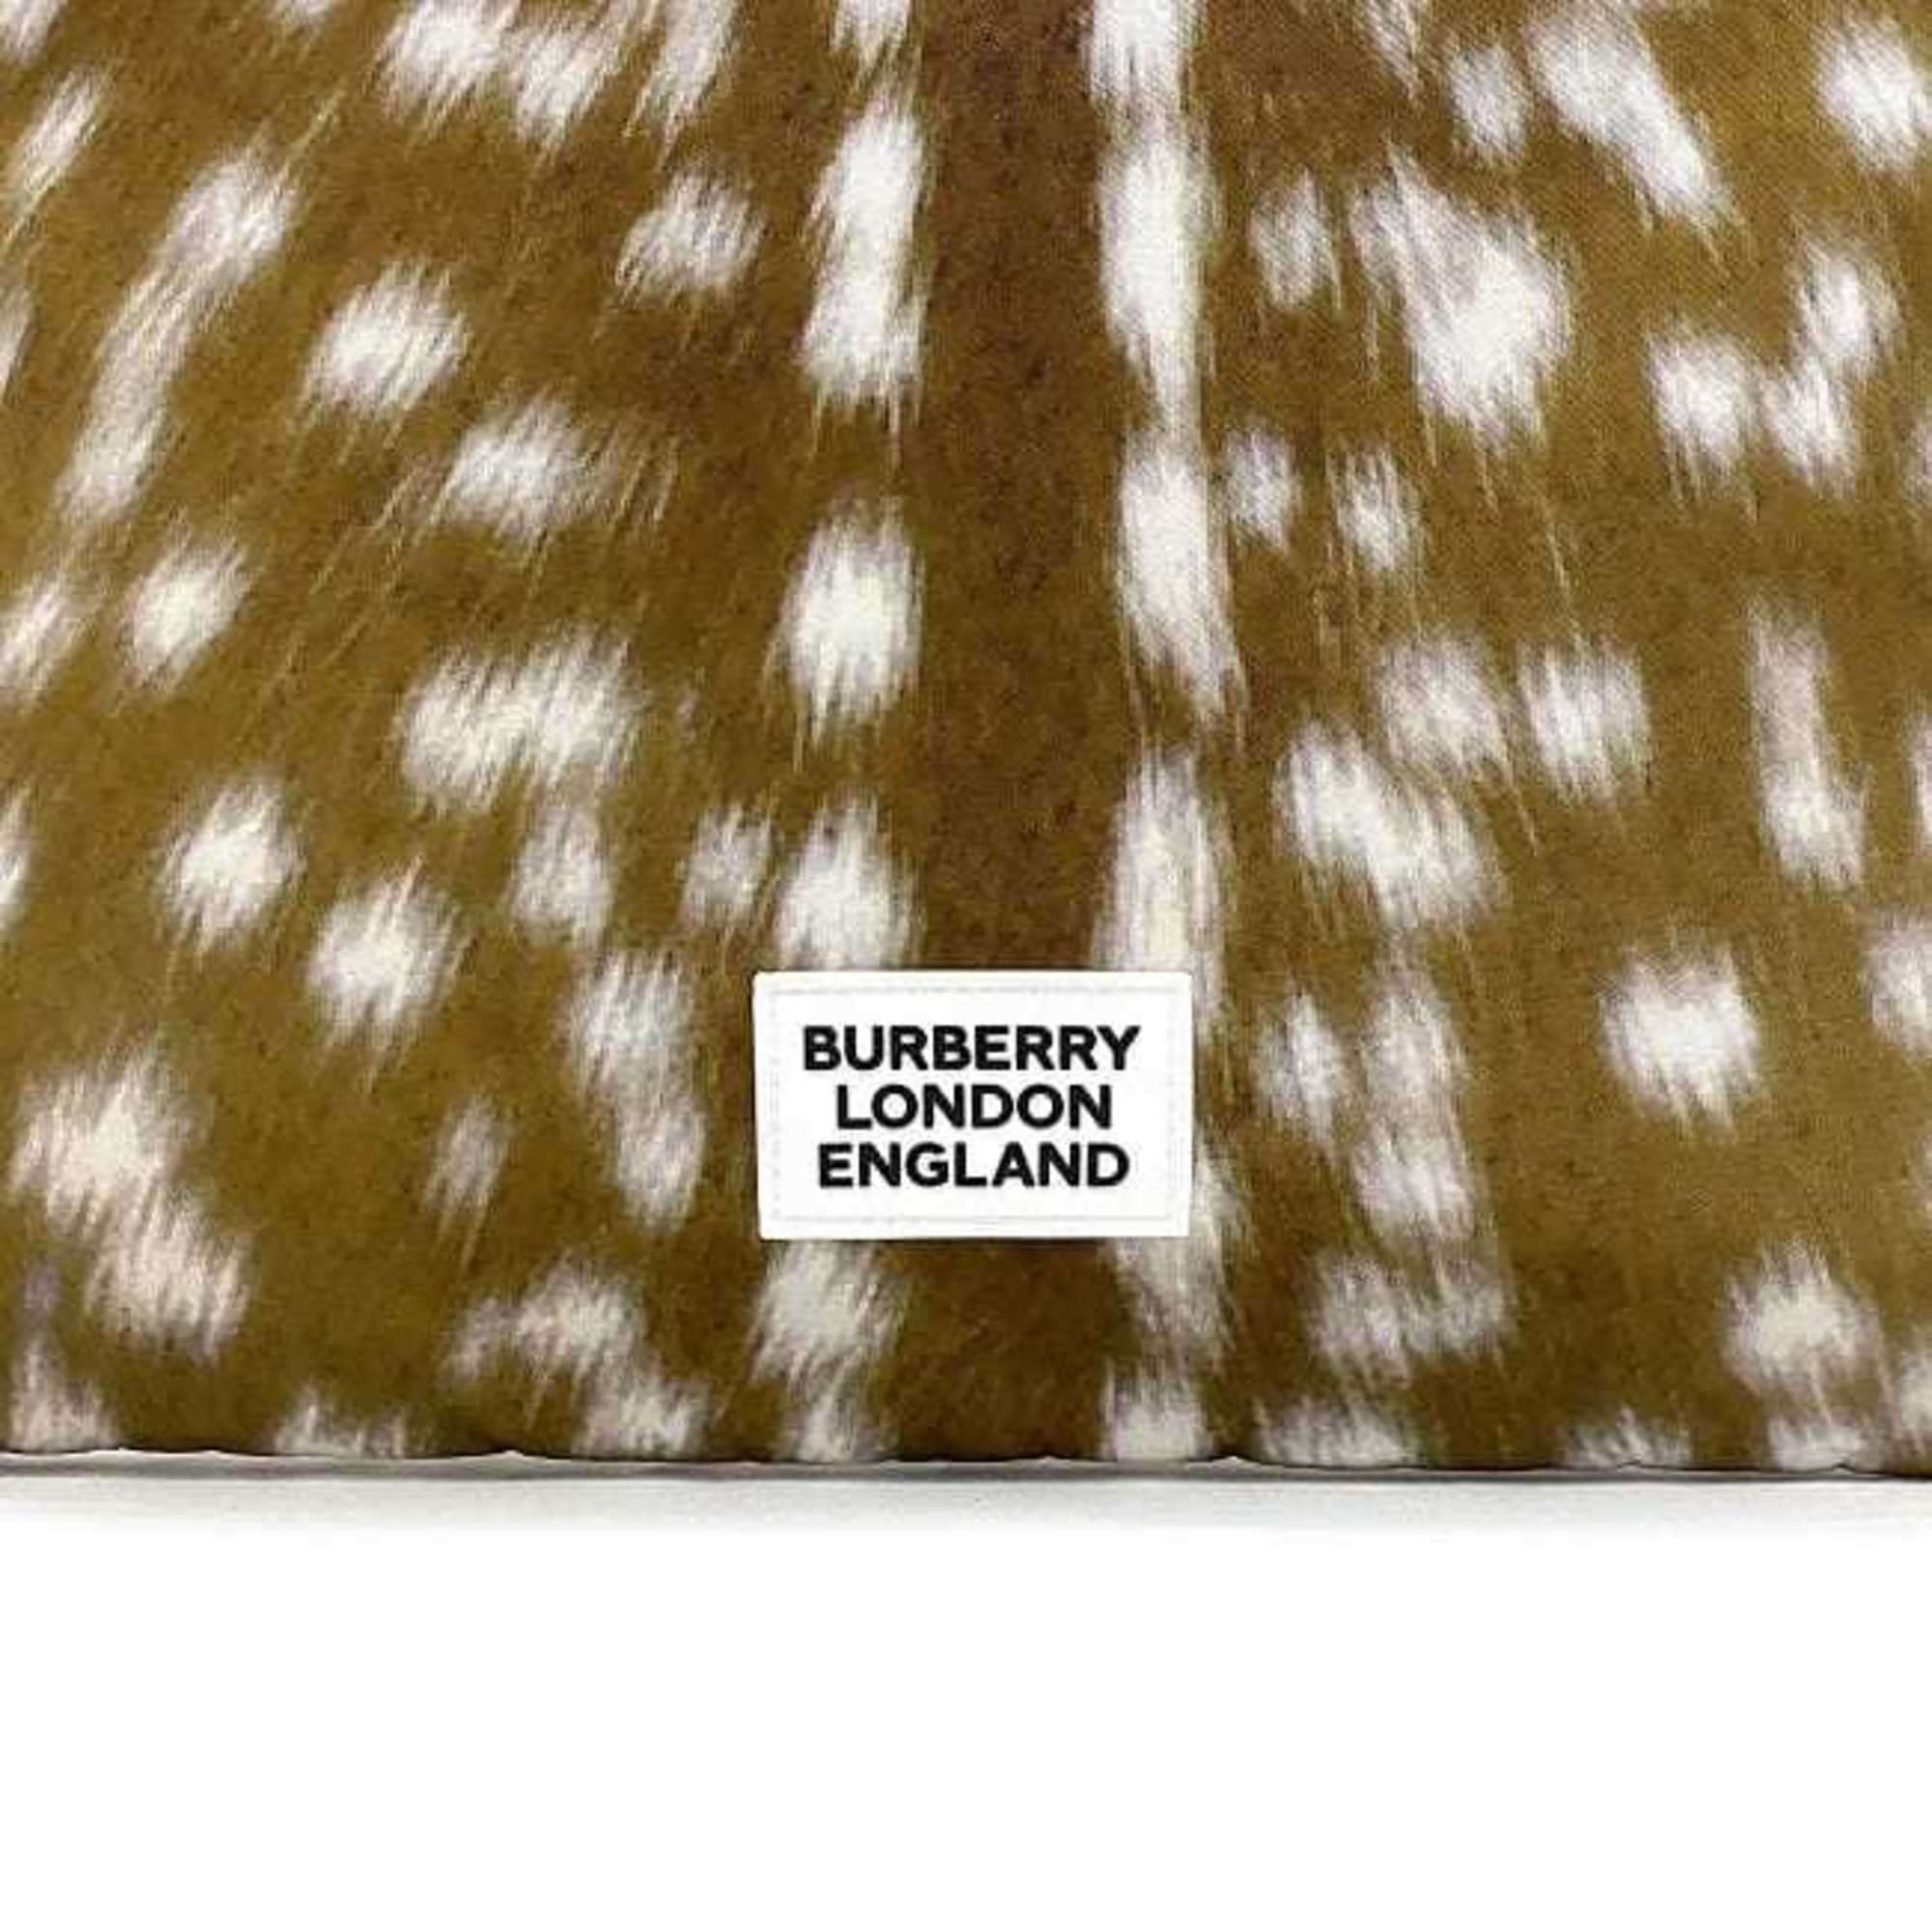 Burberry tote bag brown black animal print 8022363 nylon leather BURBERRY MD FLAT TOTE DEER PRINTED pattern ladies deer